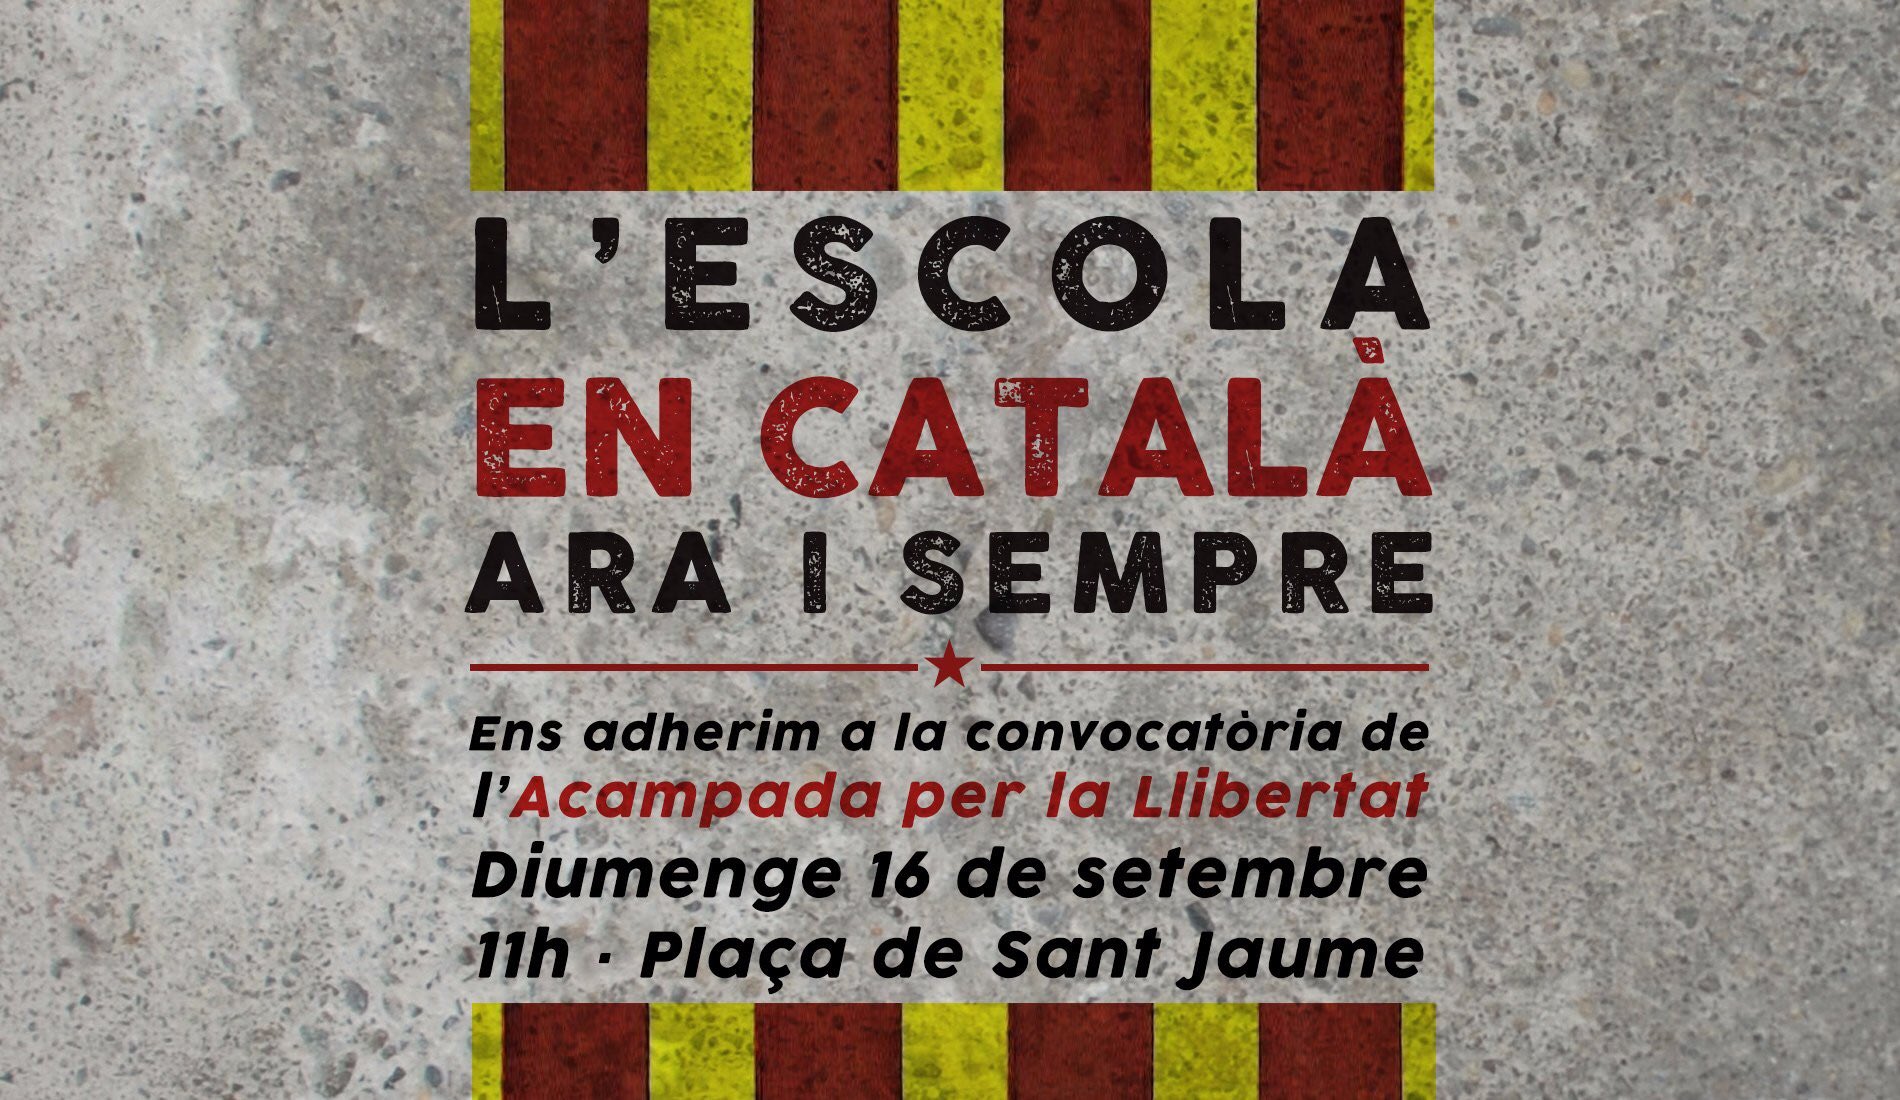 Atracon en catalan